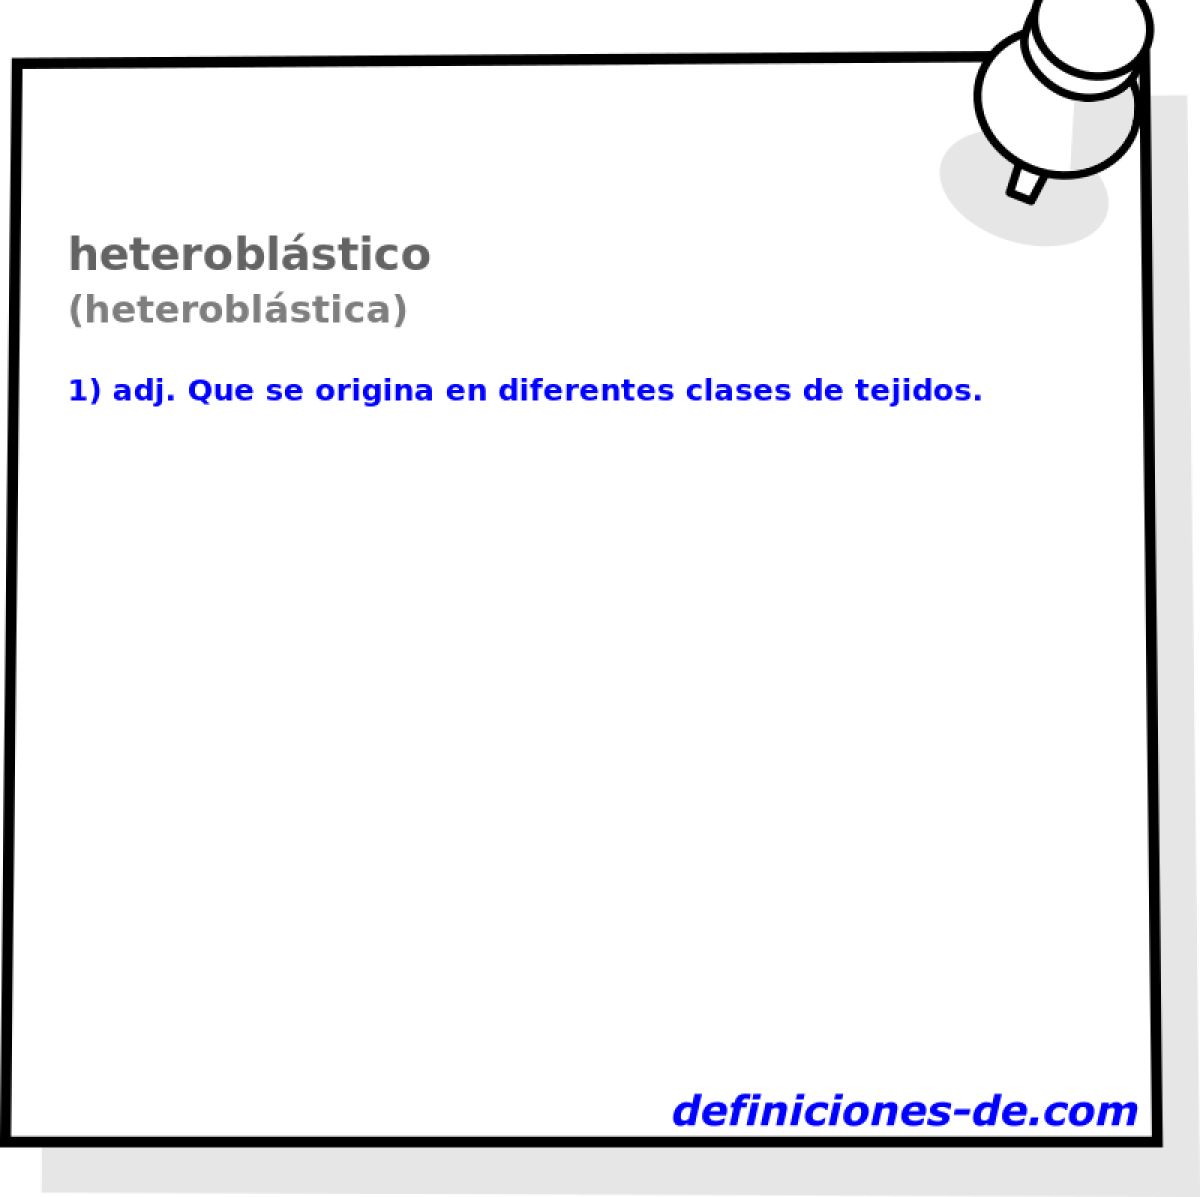 heteroblstico (heteroblstica)